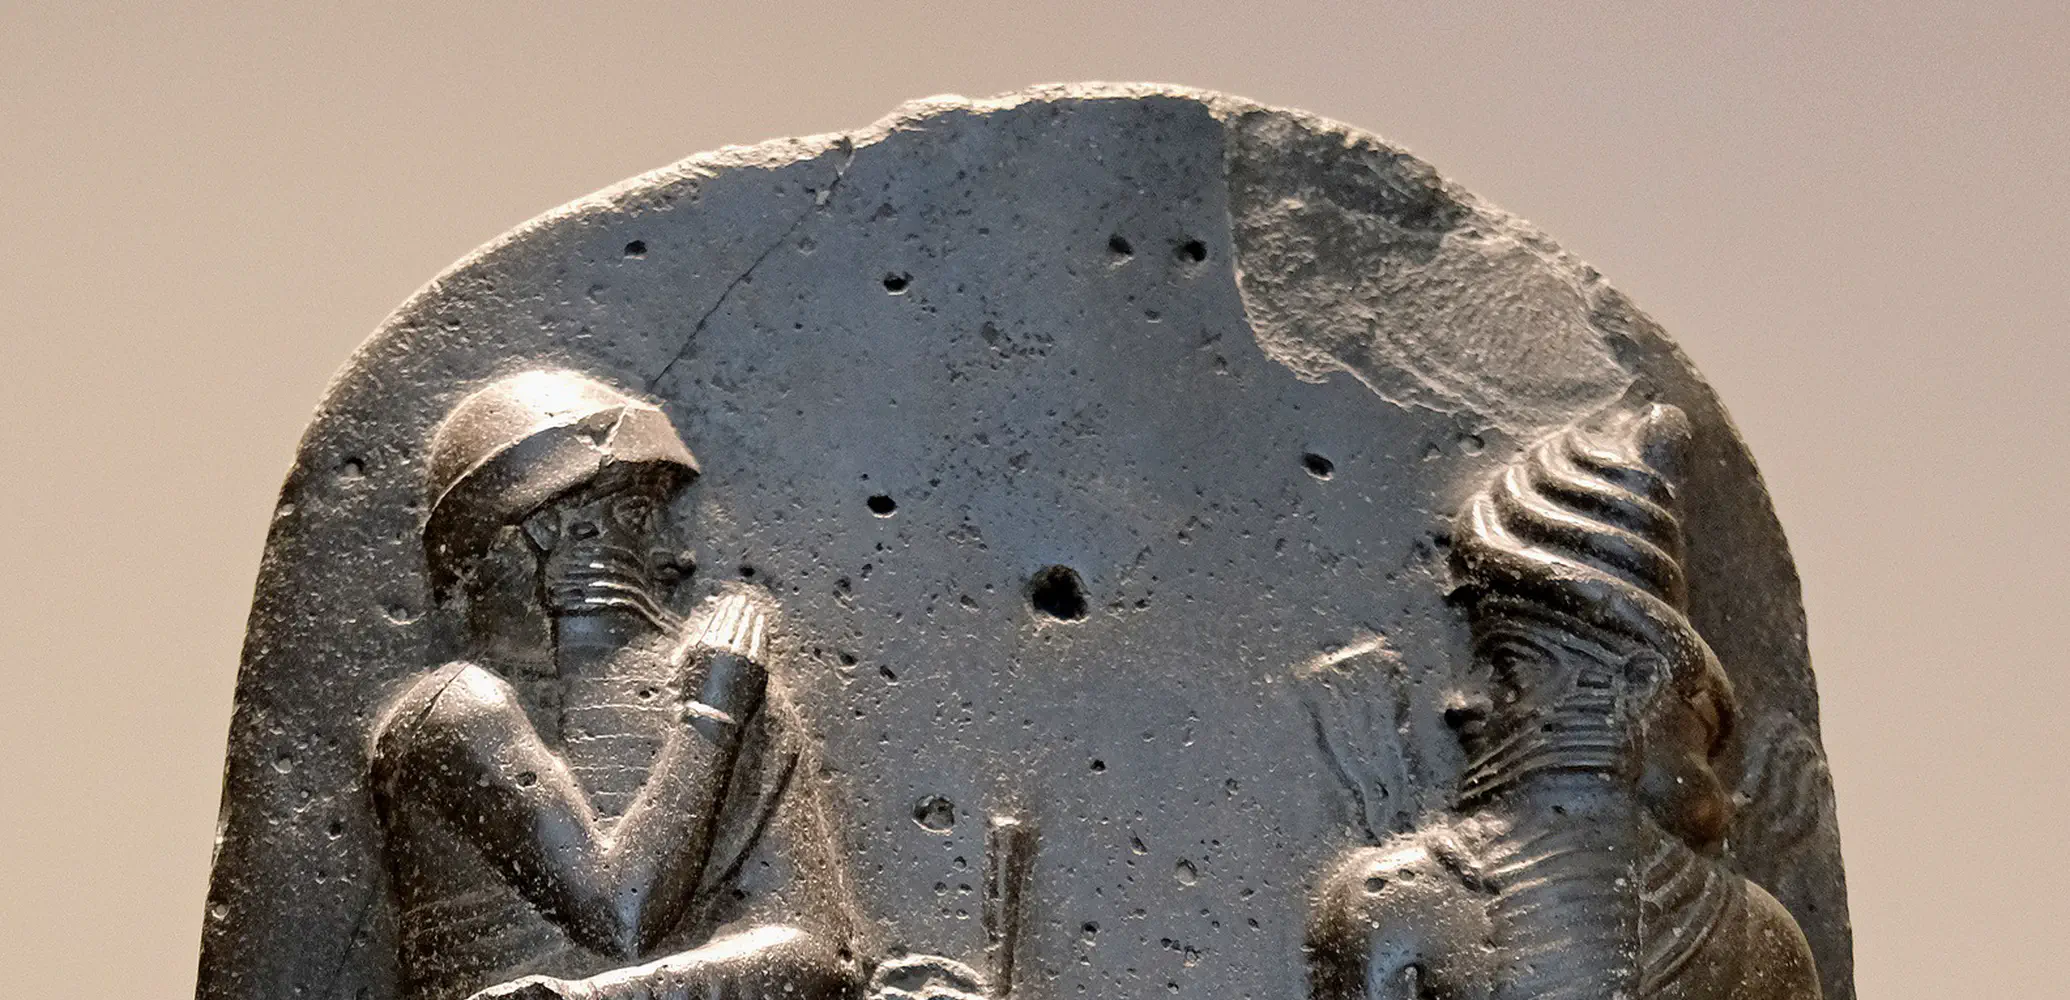 Dit is de top van de zuil waarop de Babylonische koning Hammoerabi omstreeks 1755 zijn complete wetgeving liet graveren. Te zien is hoe de koning (rechts, zittend) de wet ontvangt van de zonnegod Sjamasj (links, staand).